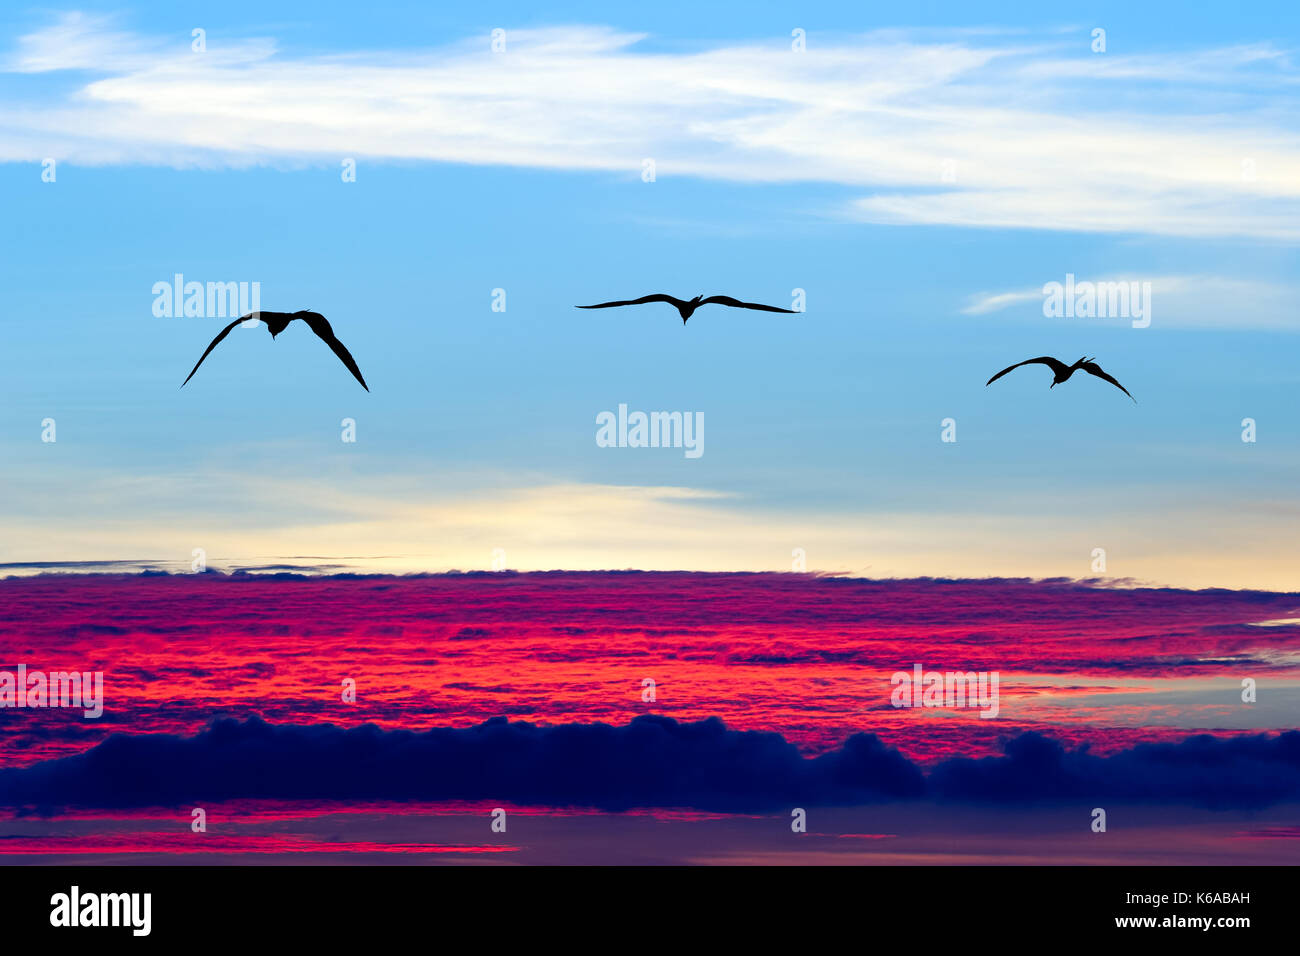 Silhouette di uccelli volare è una silhouette di un uccello con ali stese in un volo tranquillo di libertà. Foto Stock